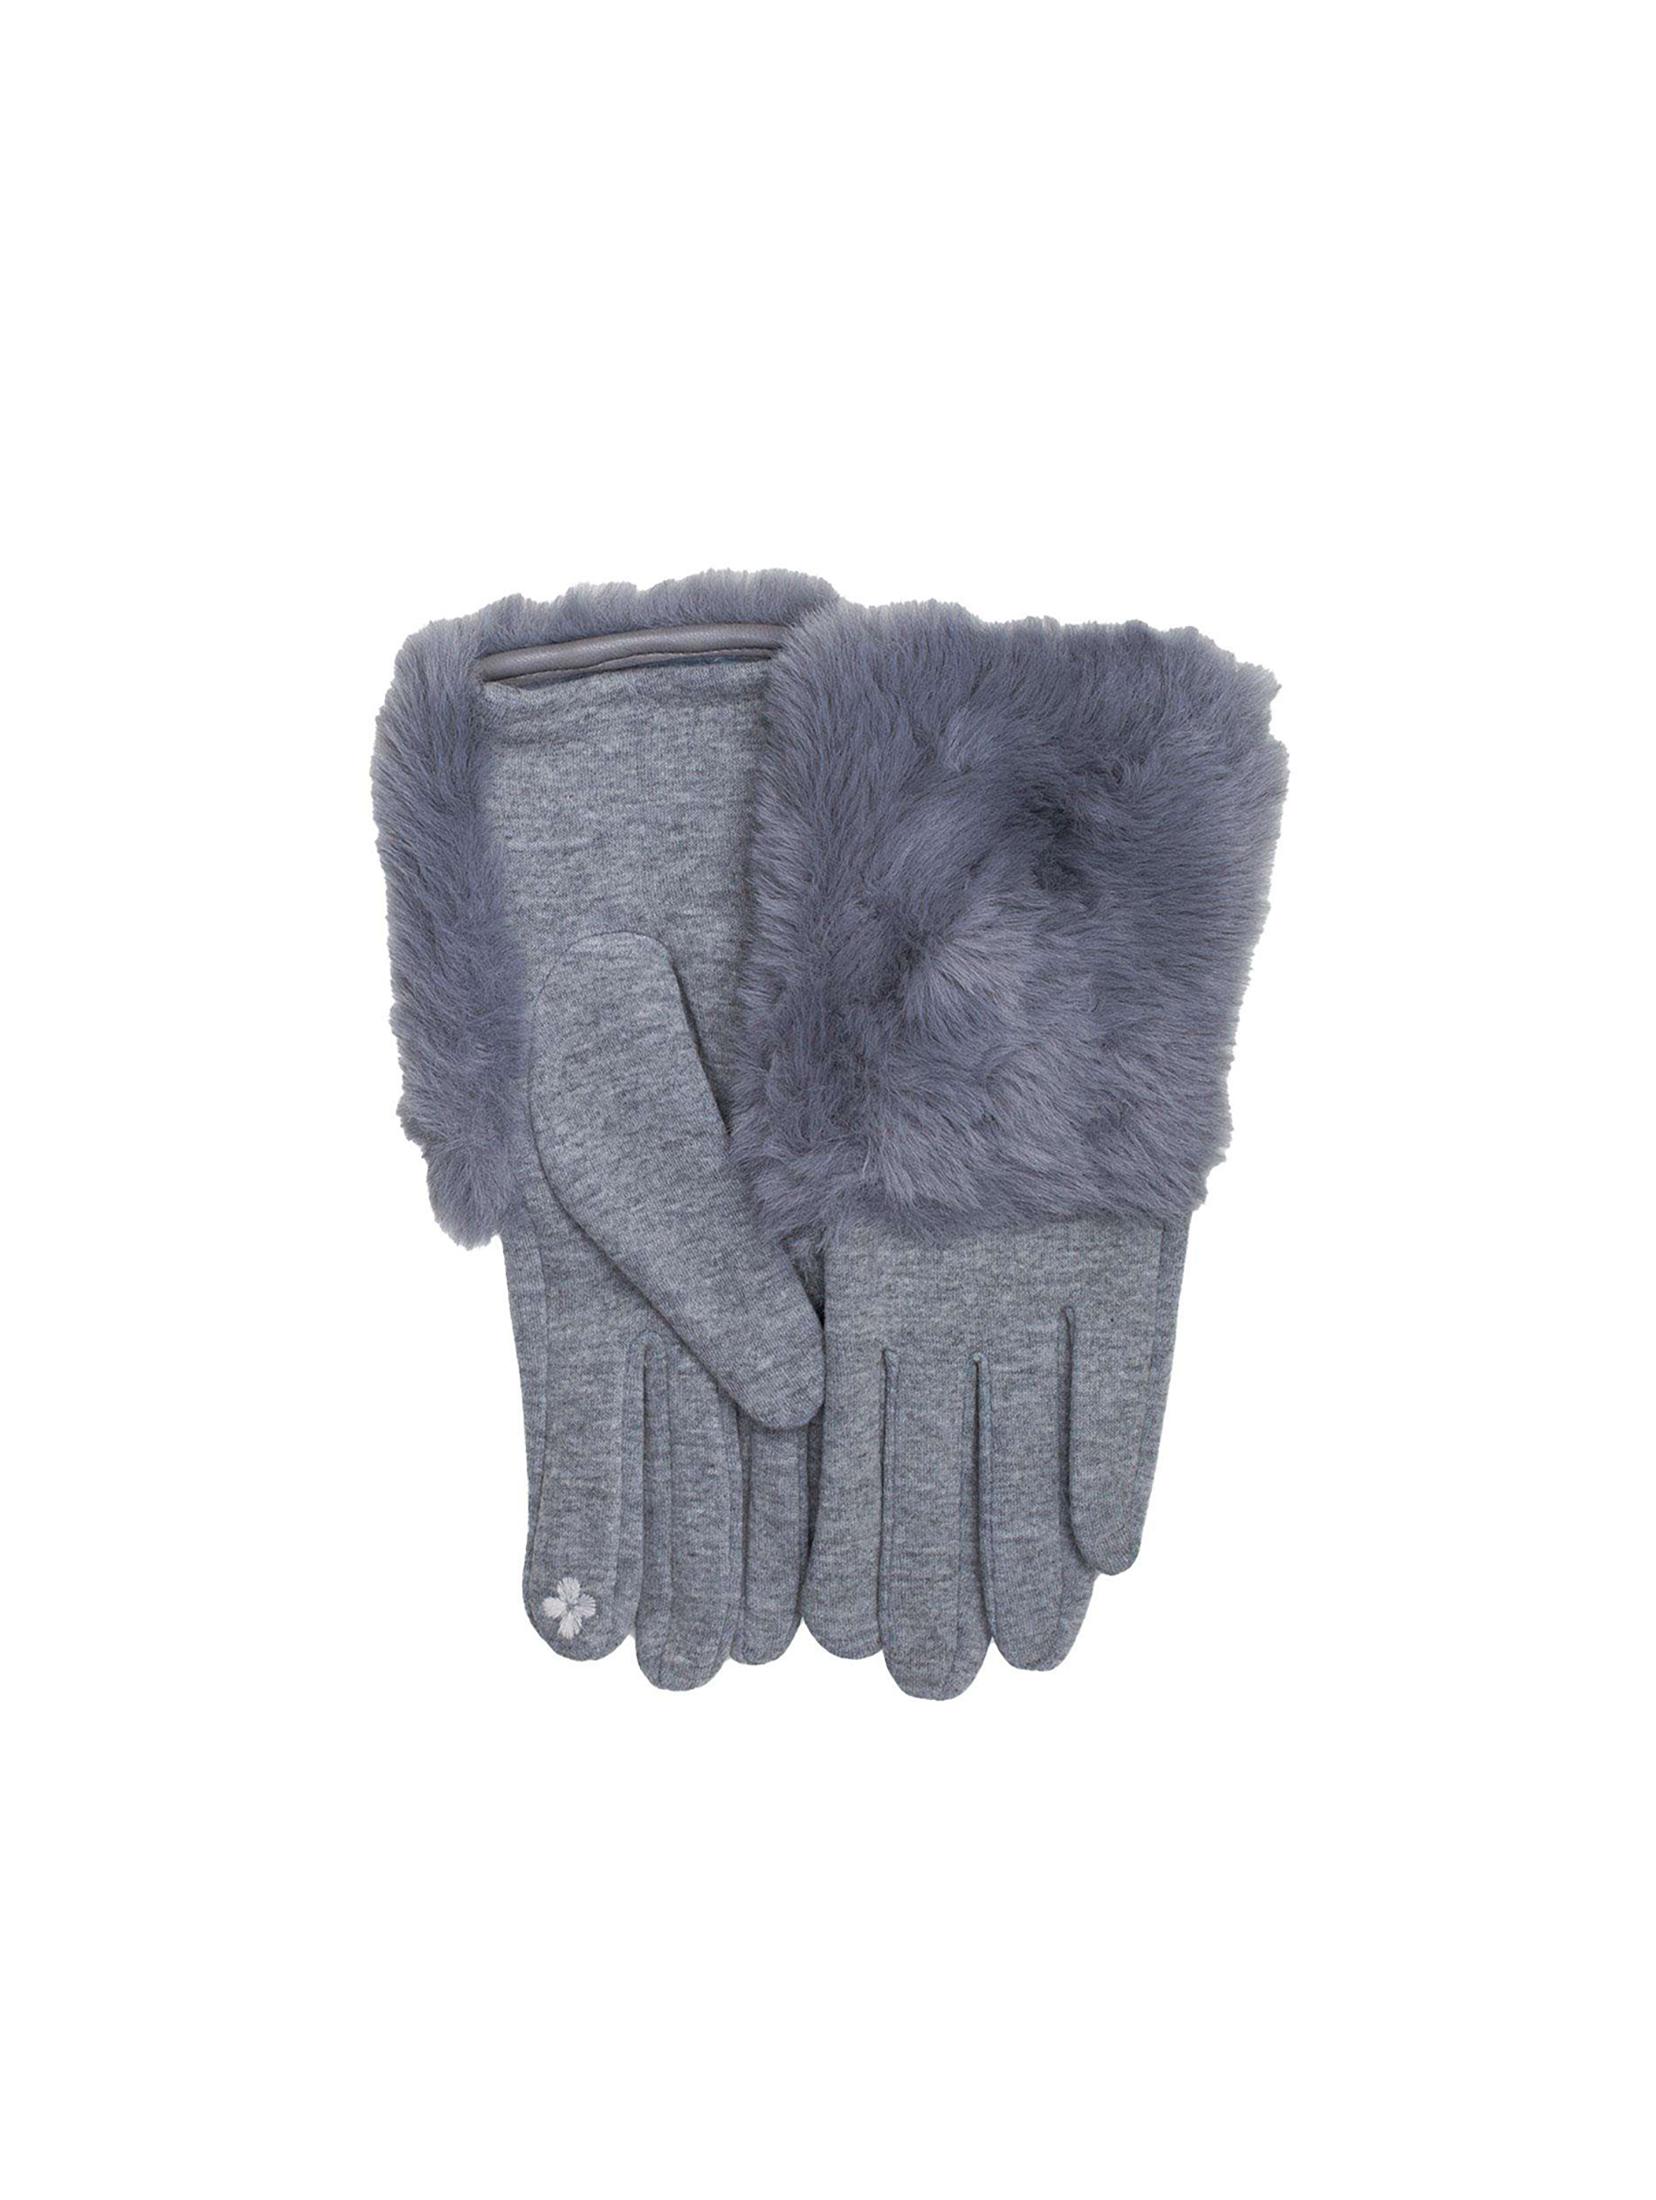 Rękawiczki zimowe damskie - szare